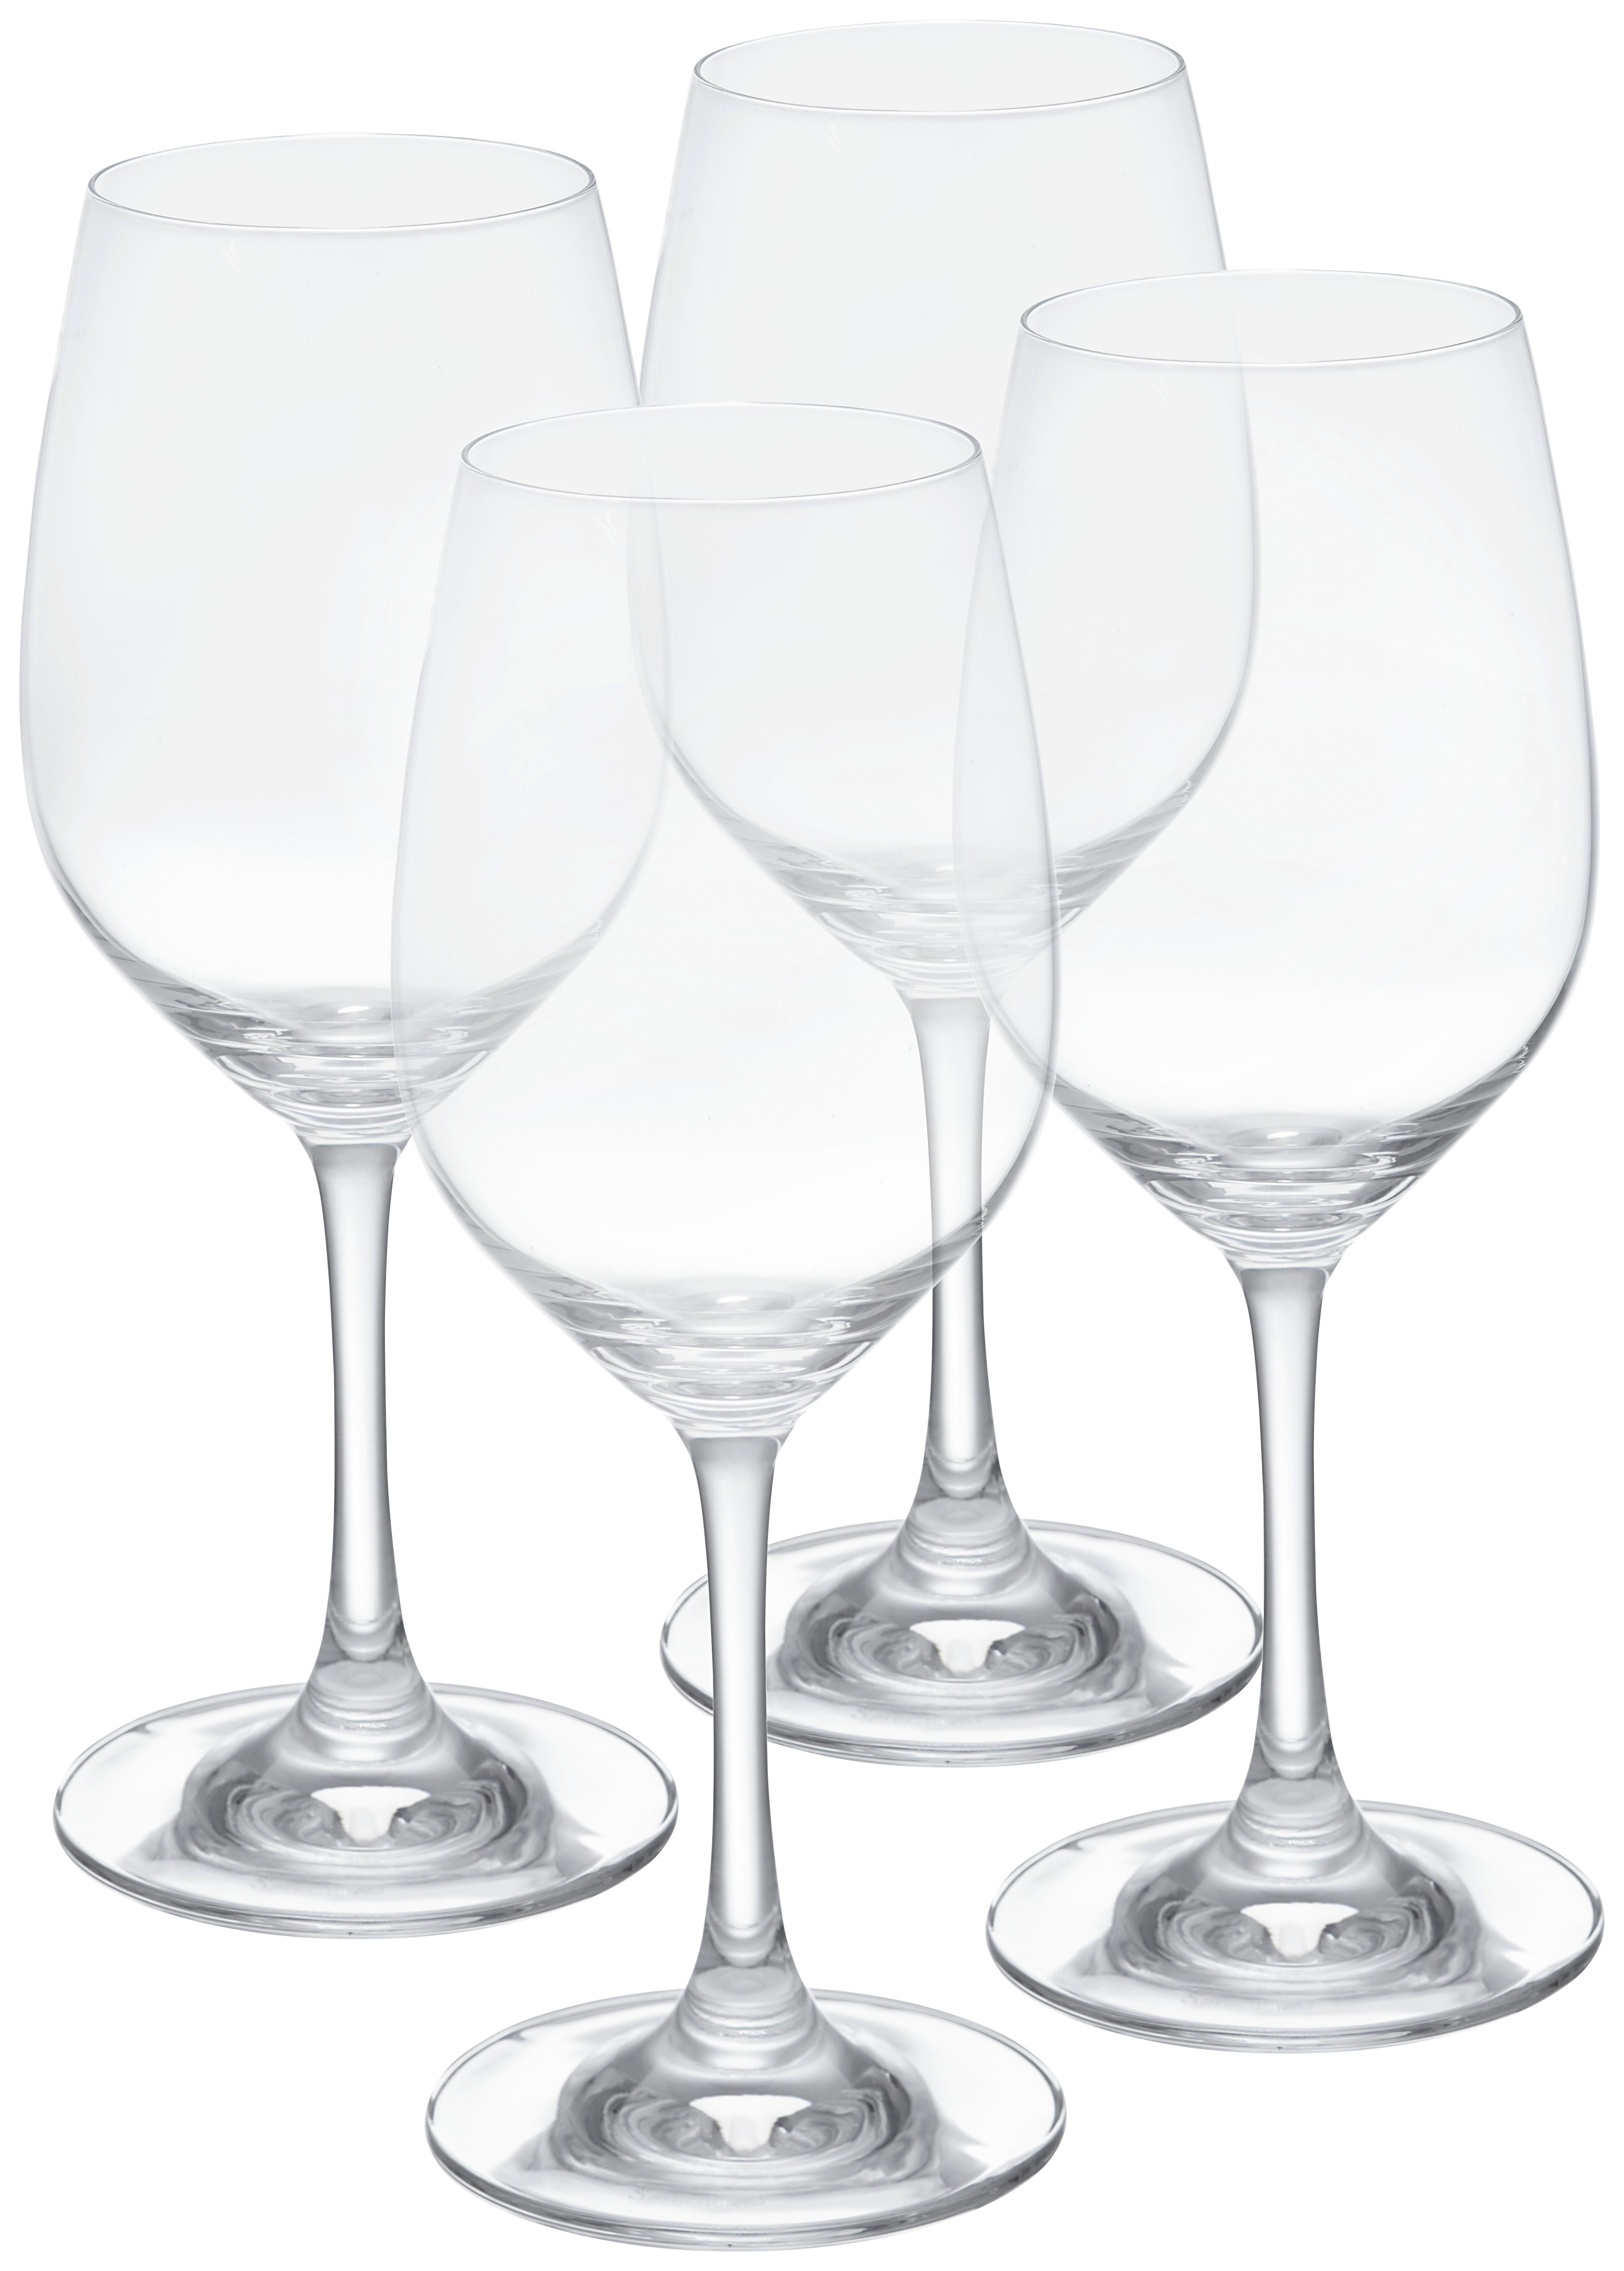 Gläserset Winelovers in Klar,  4-teilig - Klar, MODERN, Glas (8/20,9/8cm) - Spiegelau